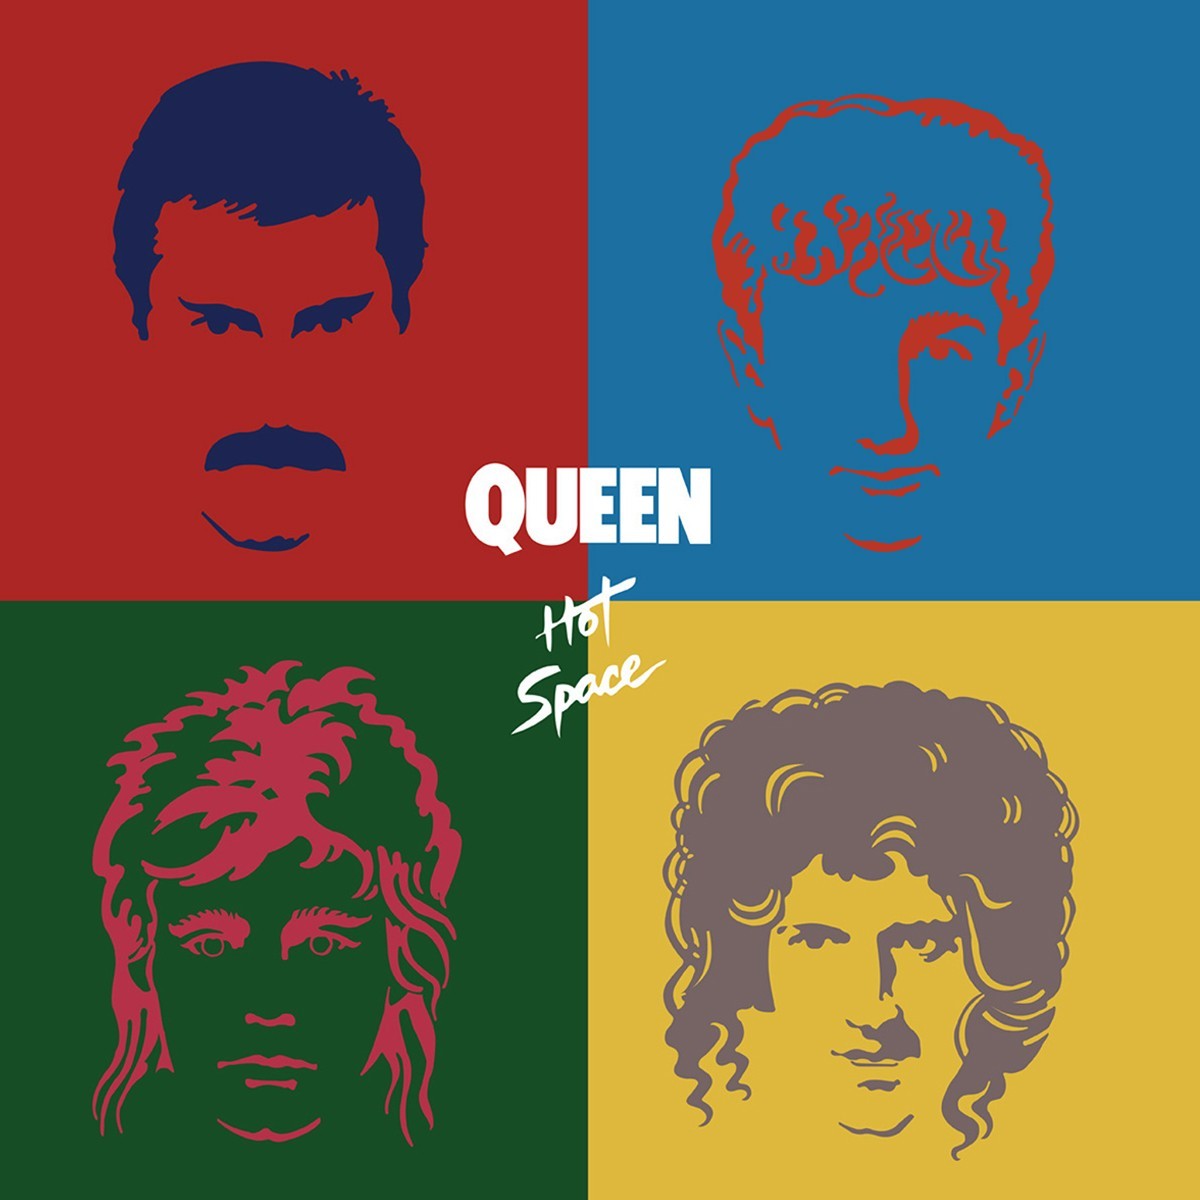 Couverture de l'album "Hot Space" de Queen